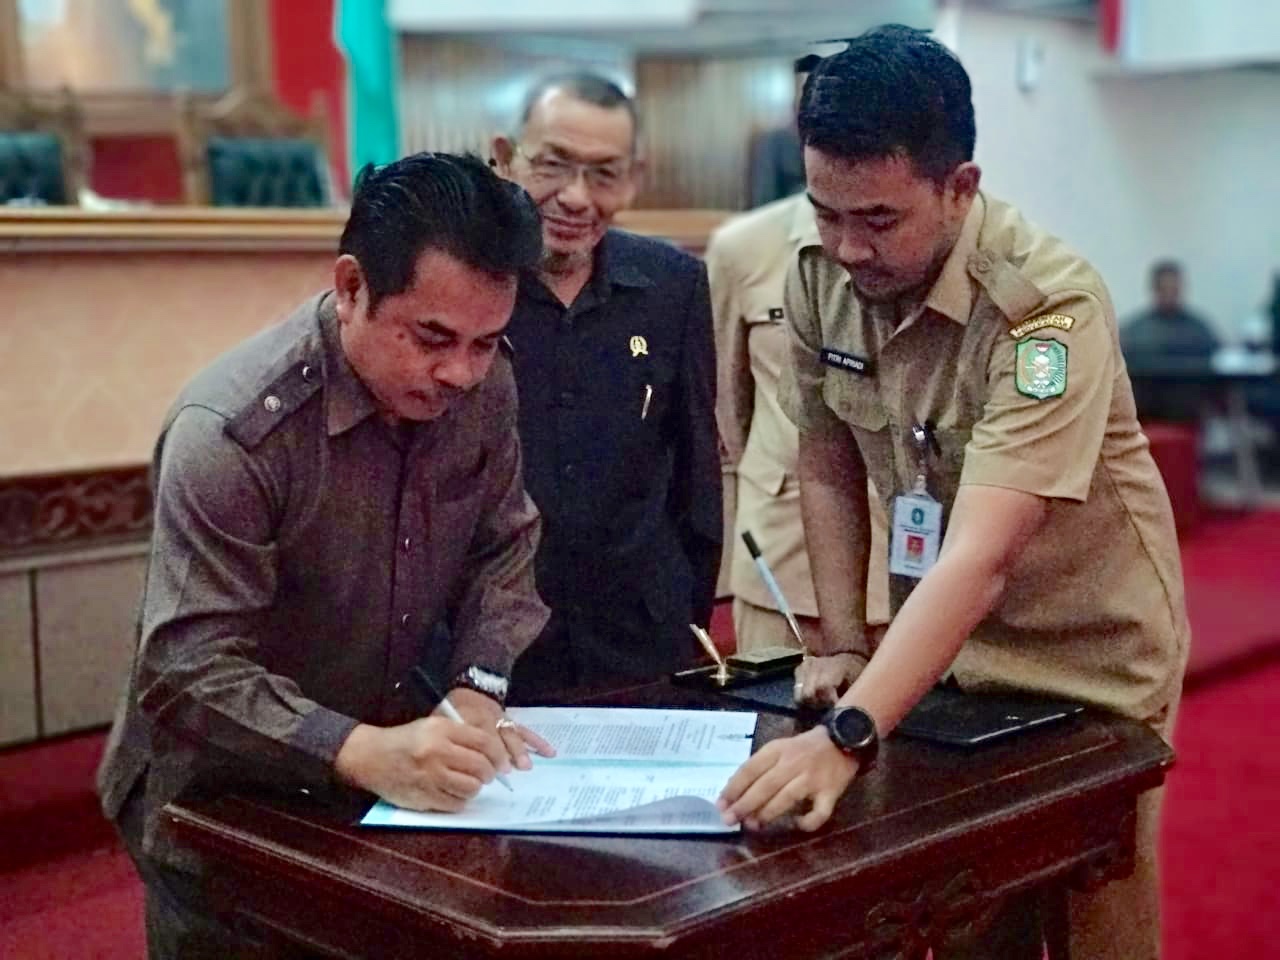 Pimpinan Sementara, Minsen menandatangani berkas penetapan Pimpinan Definitif DPRD Provinsi Kalbar, di Balairungsari DPRD Kalbar, Senin (14/10/2019).